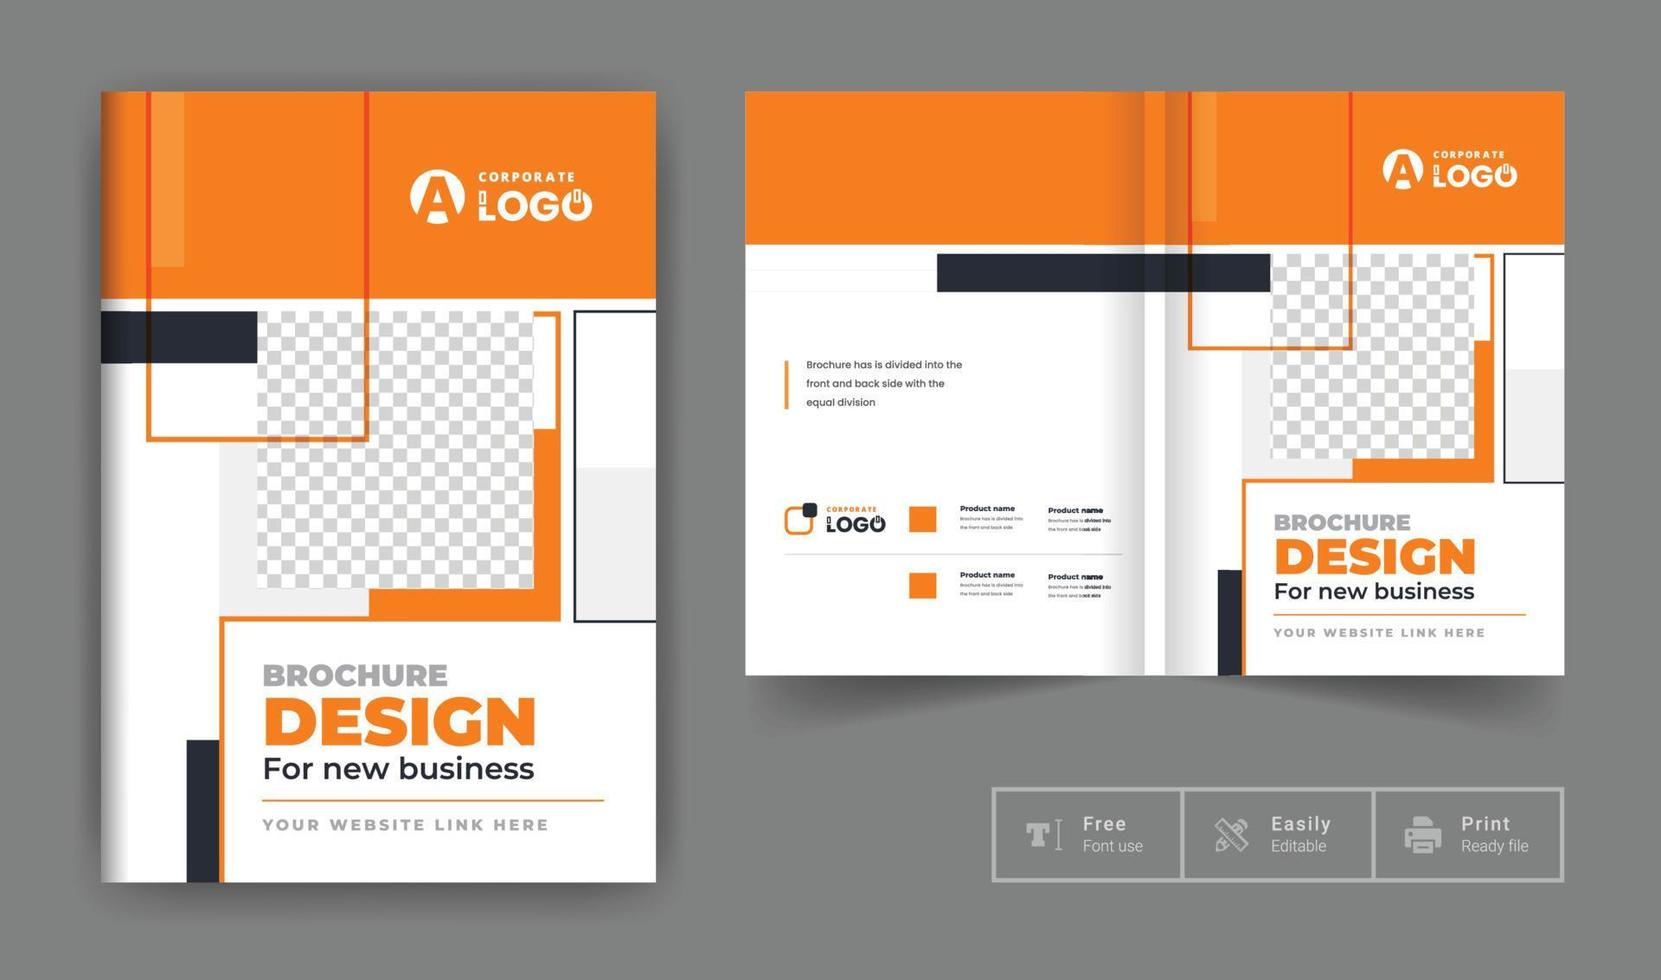 företagsföretag broschyr omslagsmall. företagsomslag design tema layout abstrakt färgglada kreativa och moderna sidor tema vektor